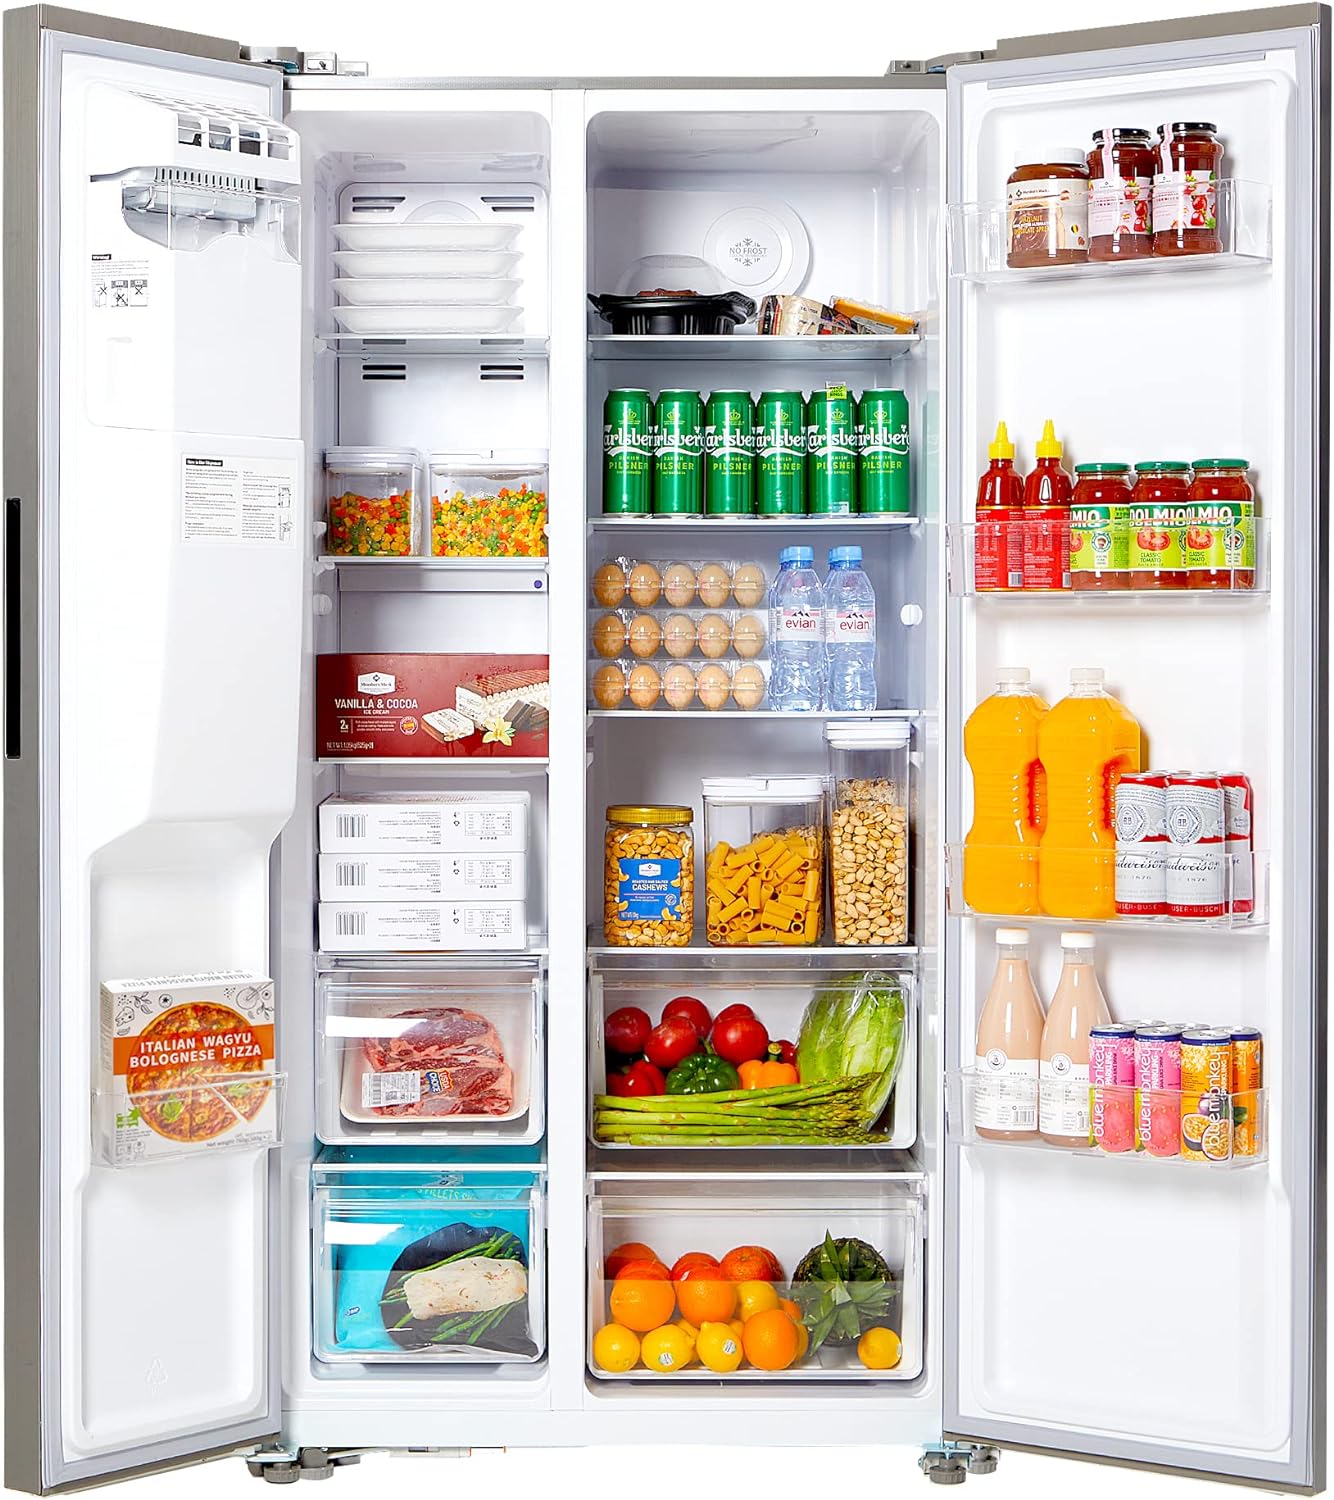 Interior of a double-door refrigerator